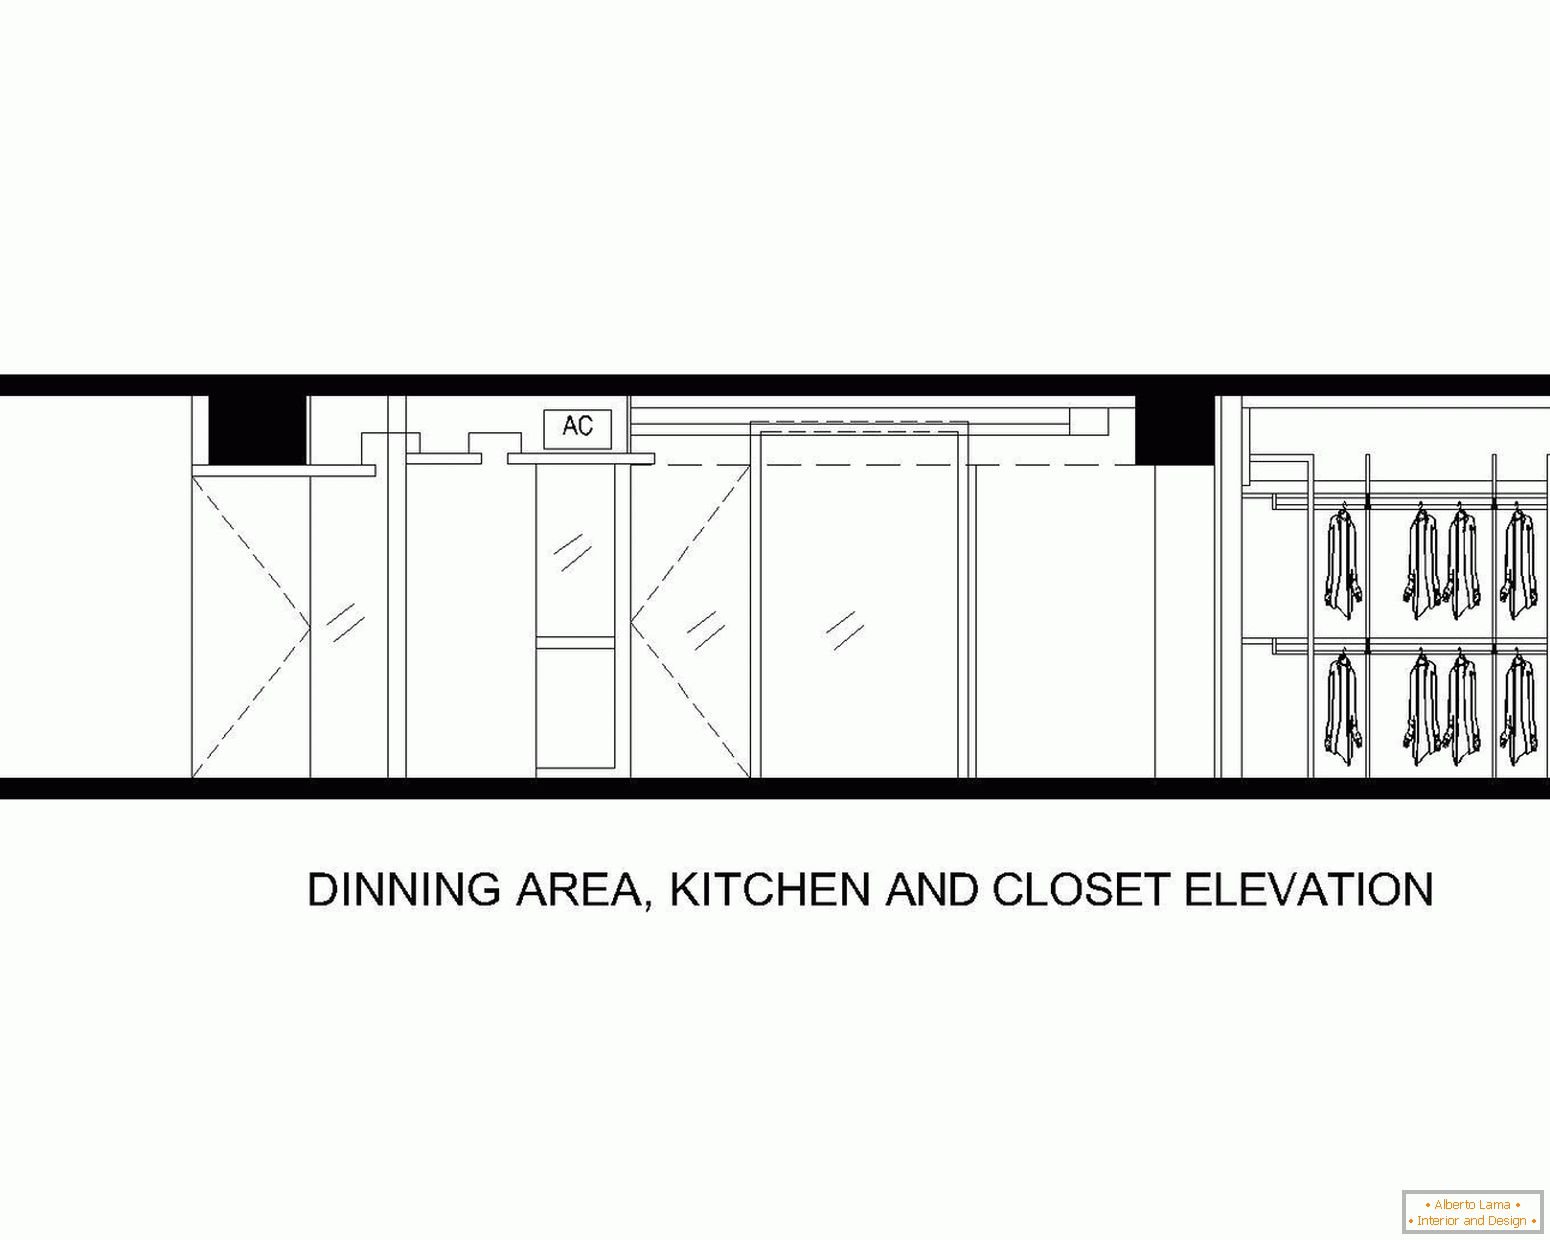 Layout da área de jantar, cozinha e banheiro